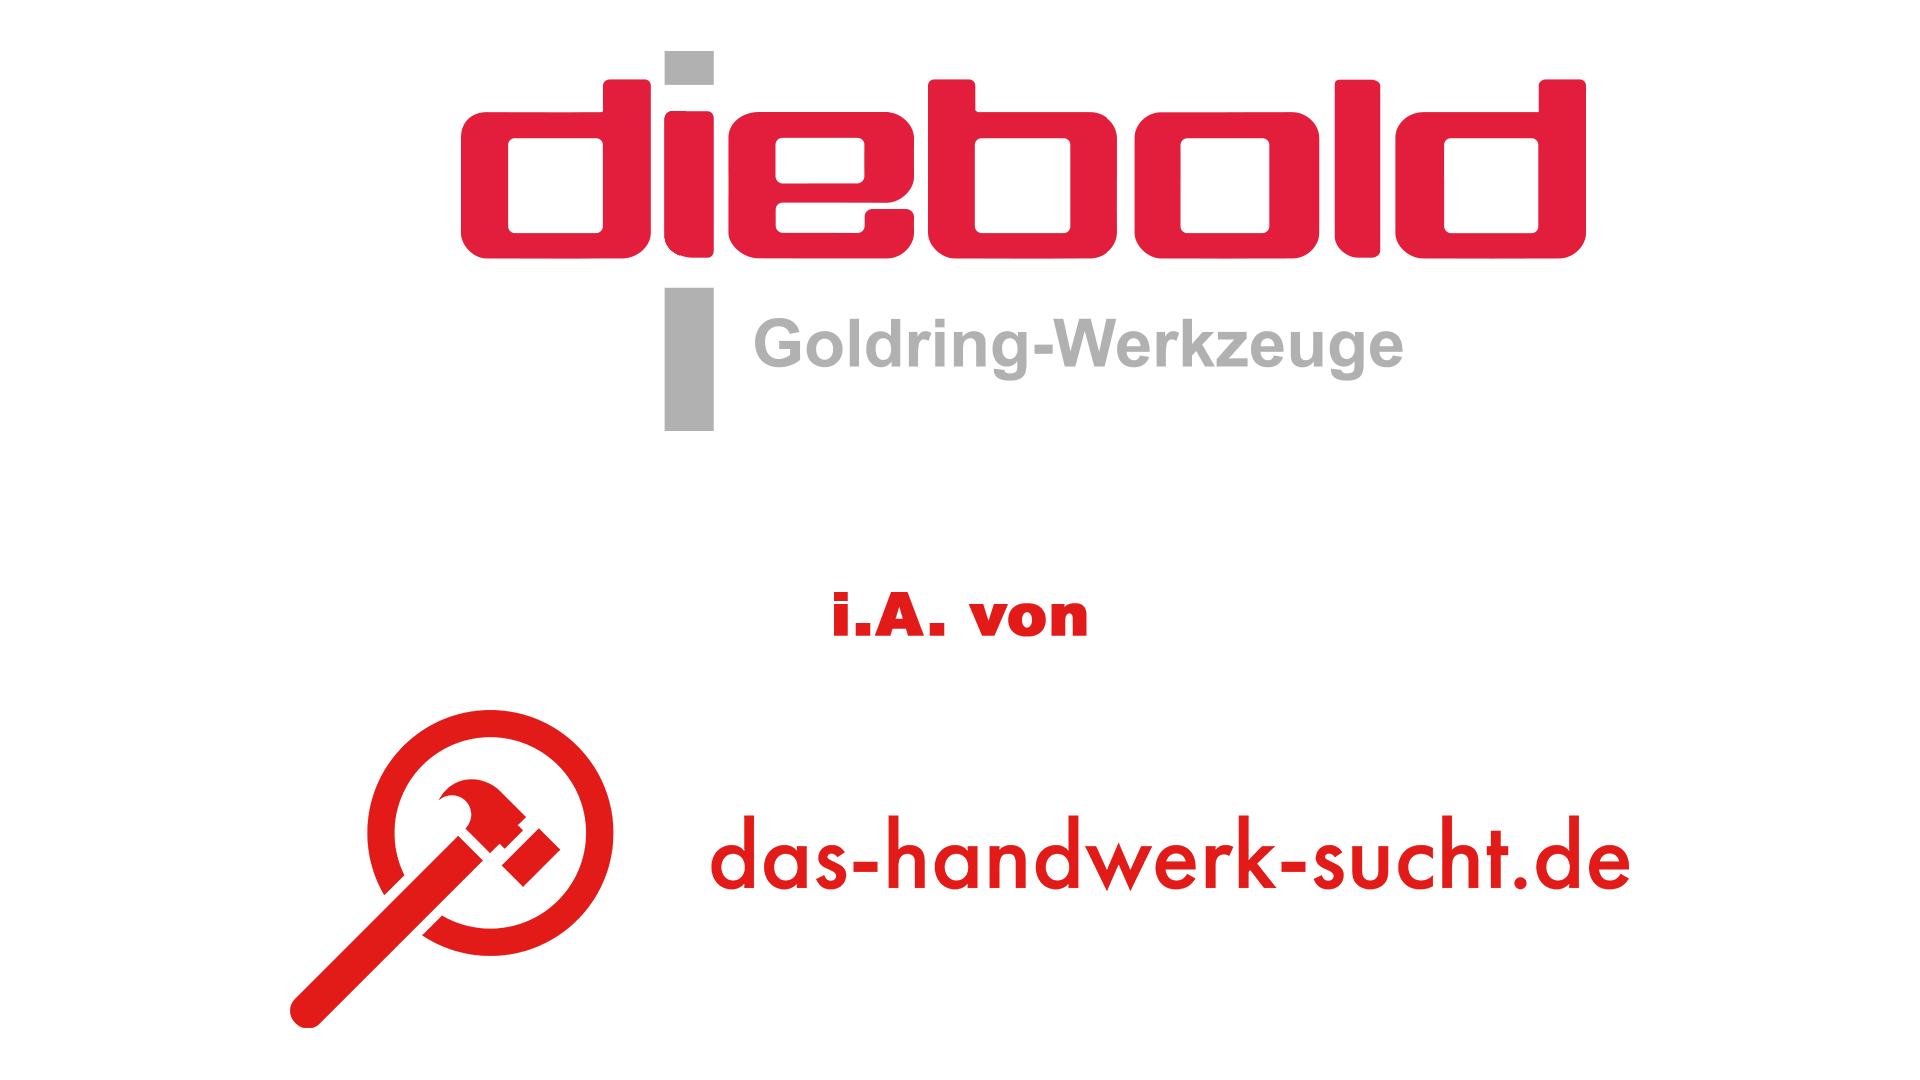 Helmut Diebold GmbH & Co. Goldring-Werkzeugfabrik